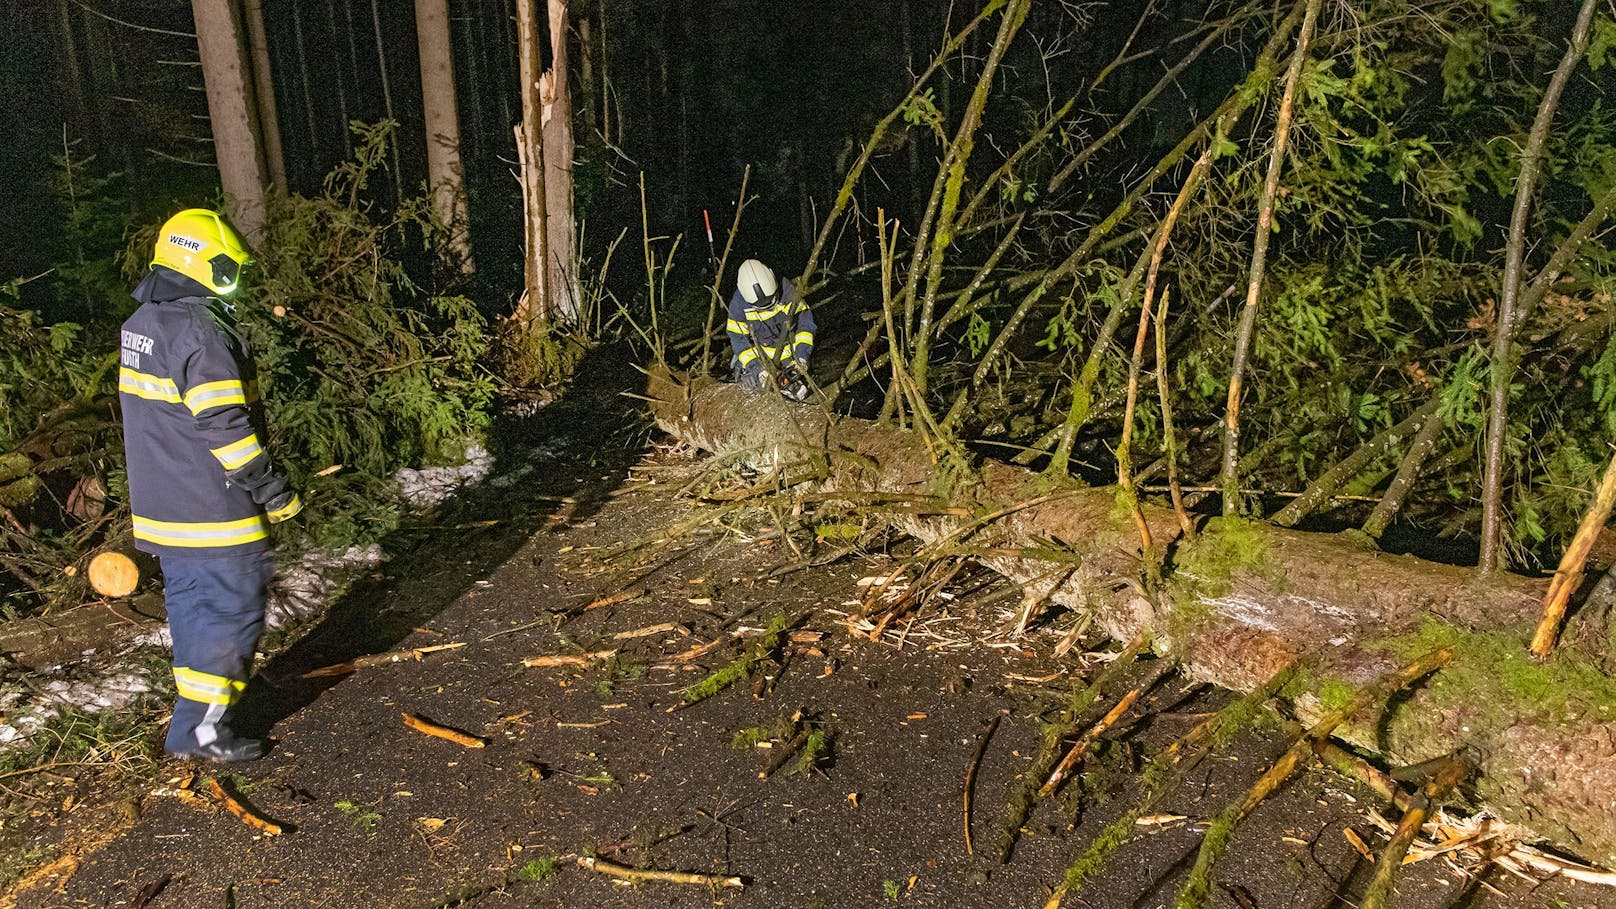 Viele durch den Sturm umgestürzte Bäume mussten von den Straßen geräumt werden, so wie hier auf der Straße zwischen Schalchen und Pischelsdorf, Gemeindegebiet Schalchen.